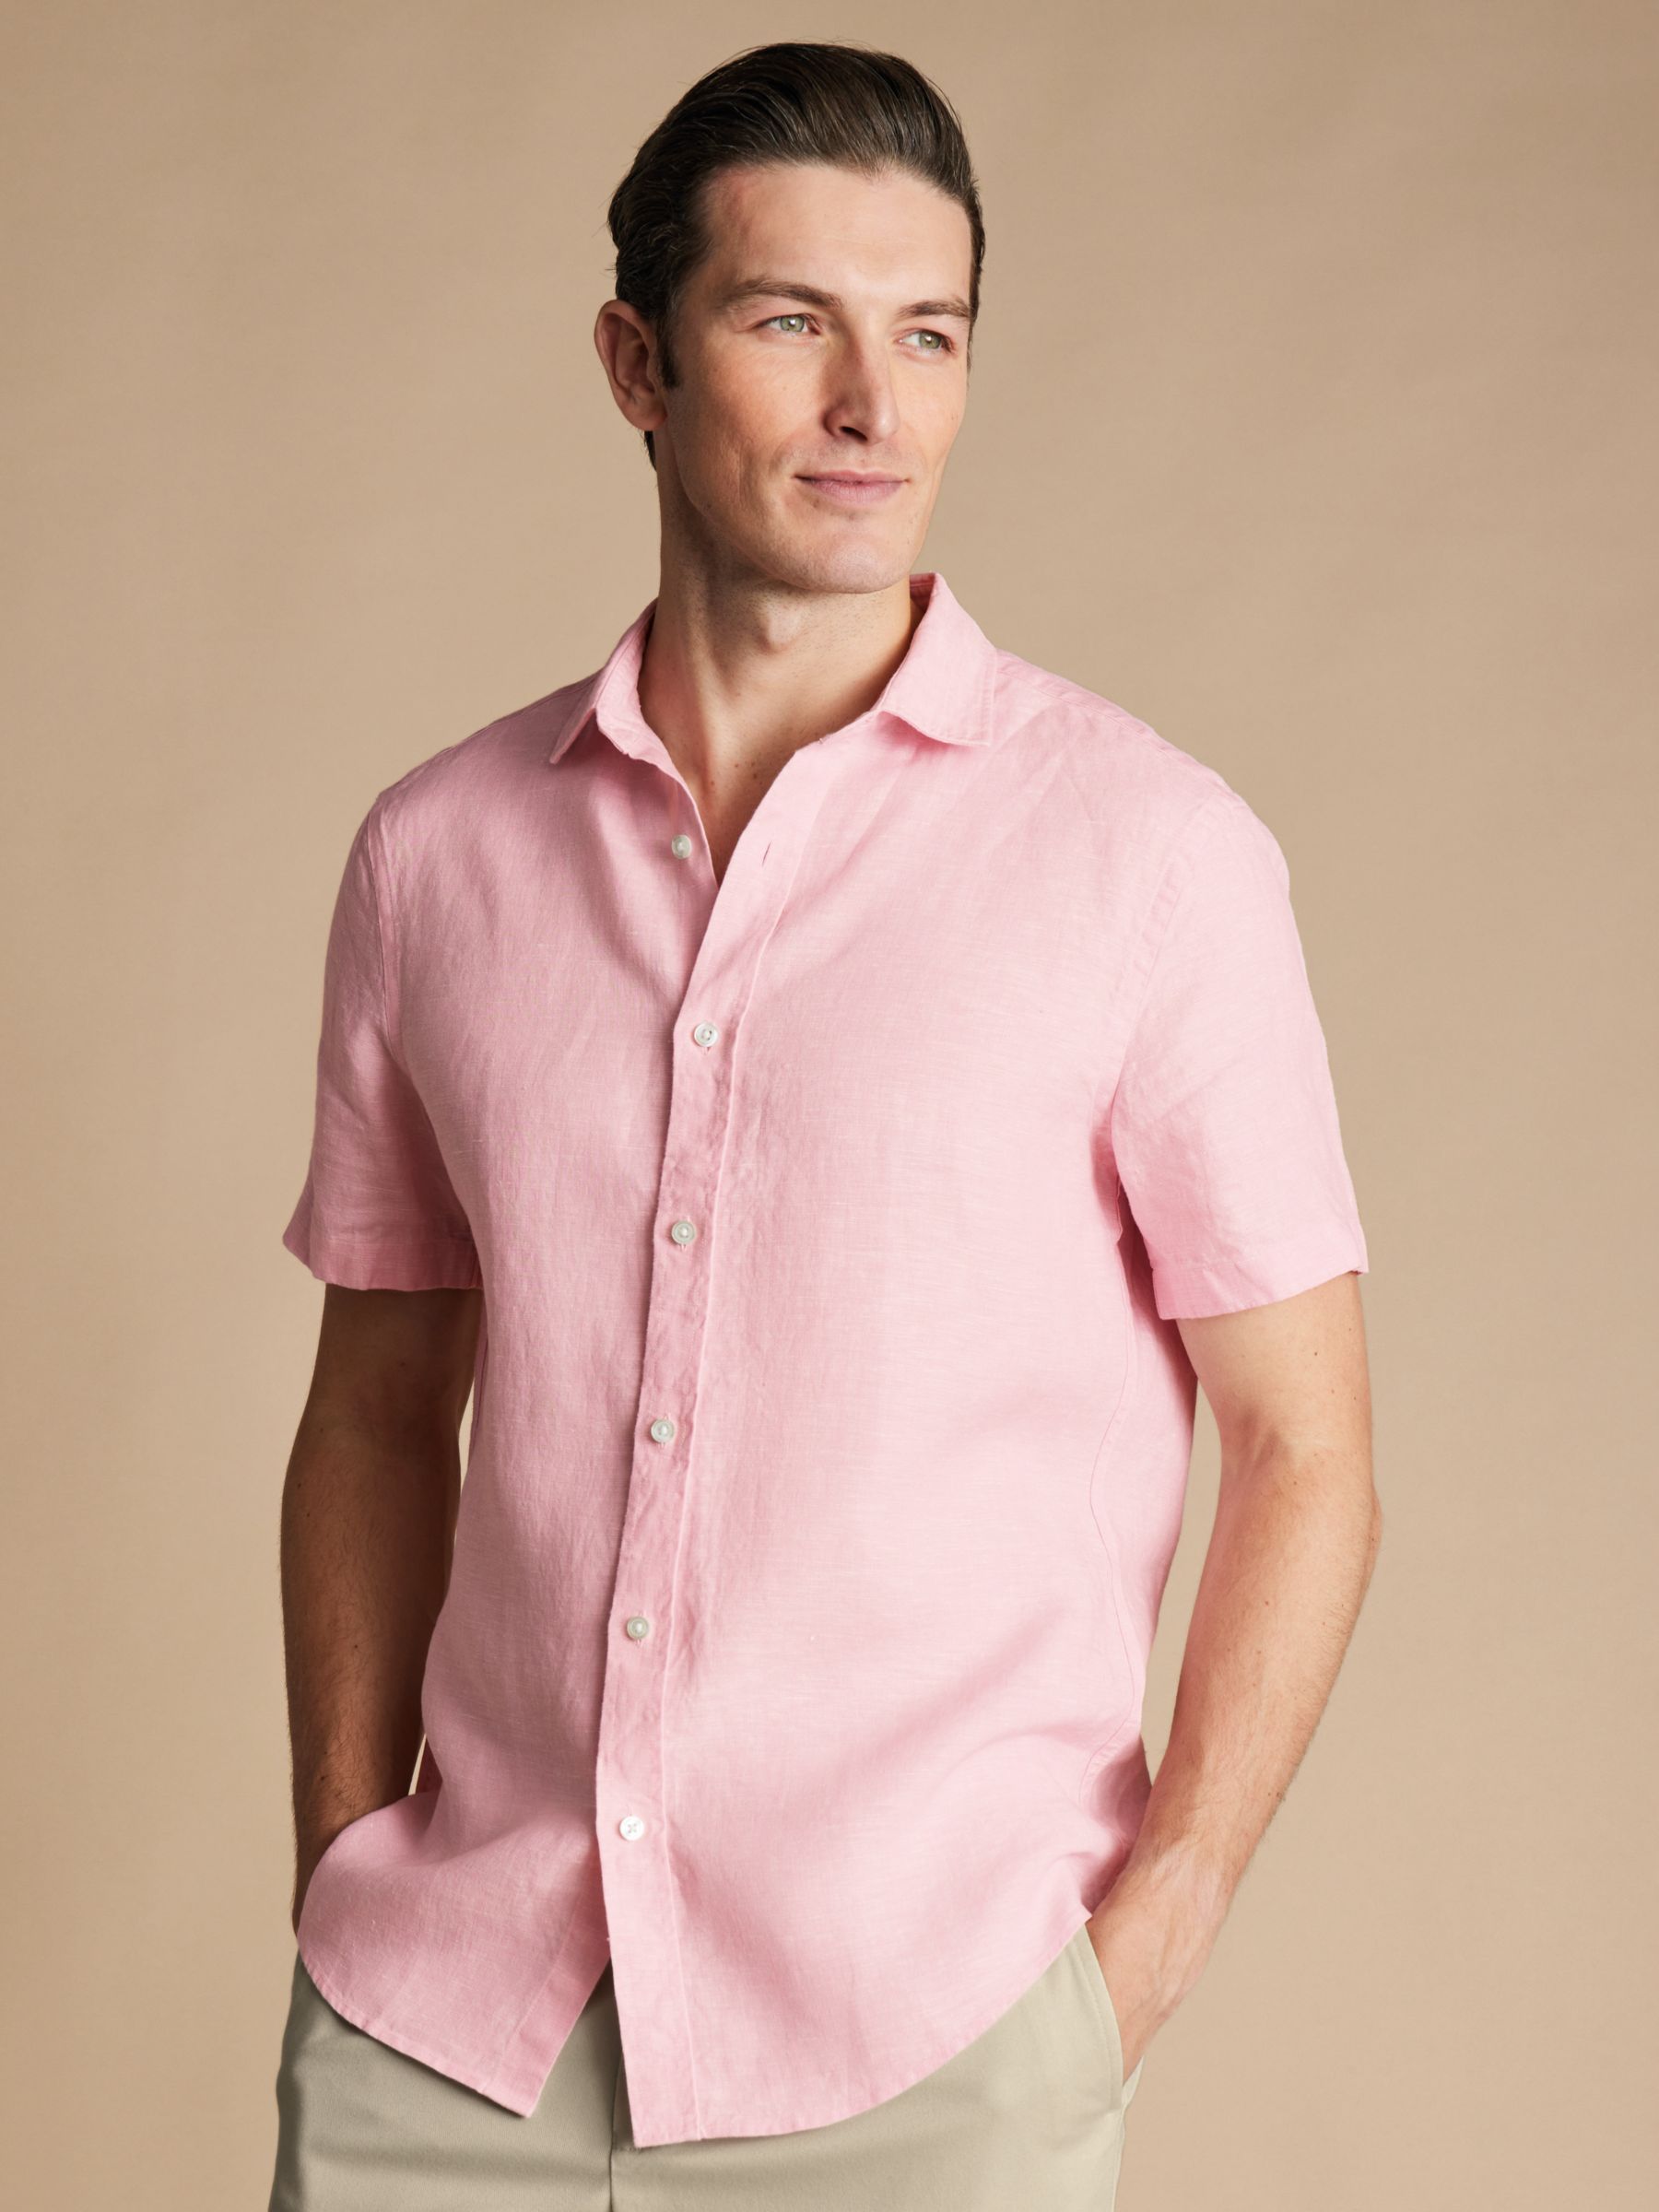 Charles Tyrwhitt Linen Classic Fit Short Sleeve Shirt, Pink, M